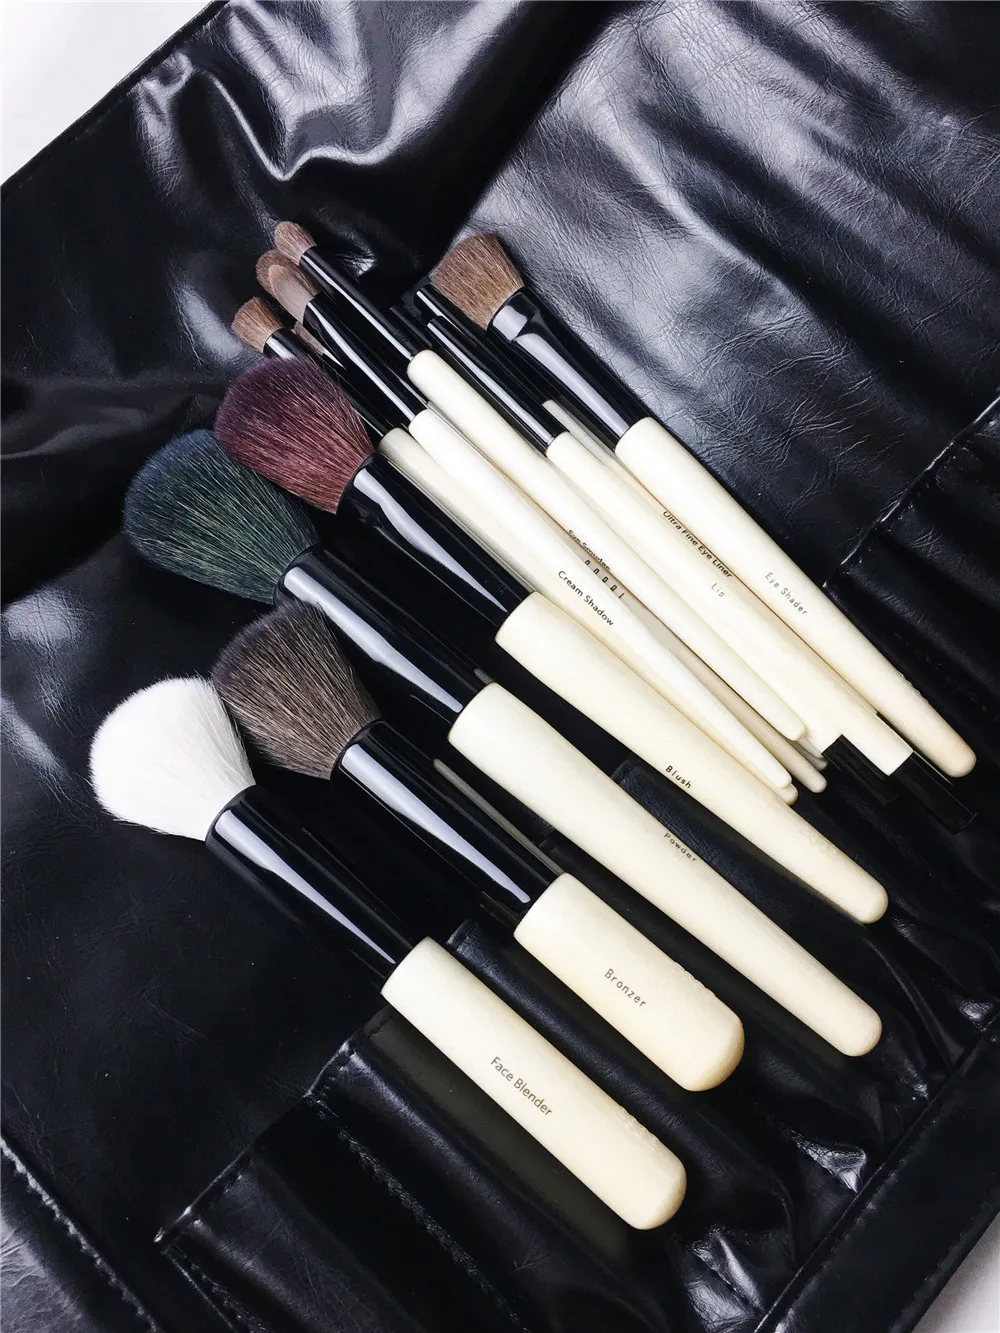 18 -й ячейки Полные кисти для макияжа, установленные с мешочком - качественная деревянная ручка для красоты набор косметики блендер блендер